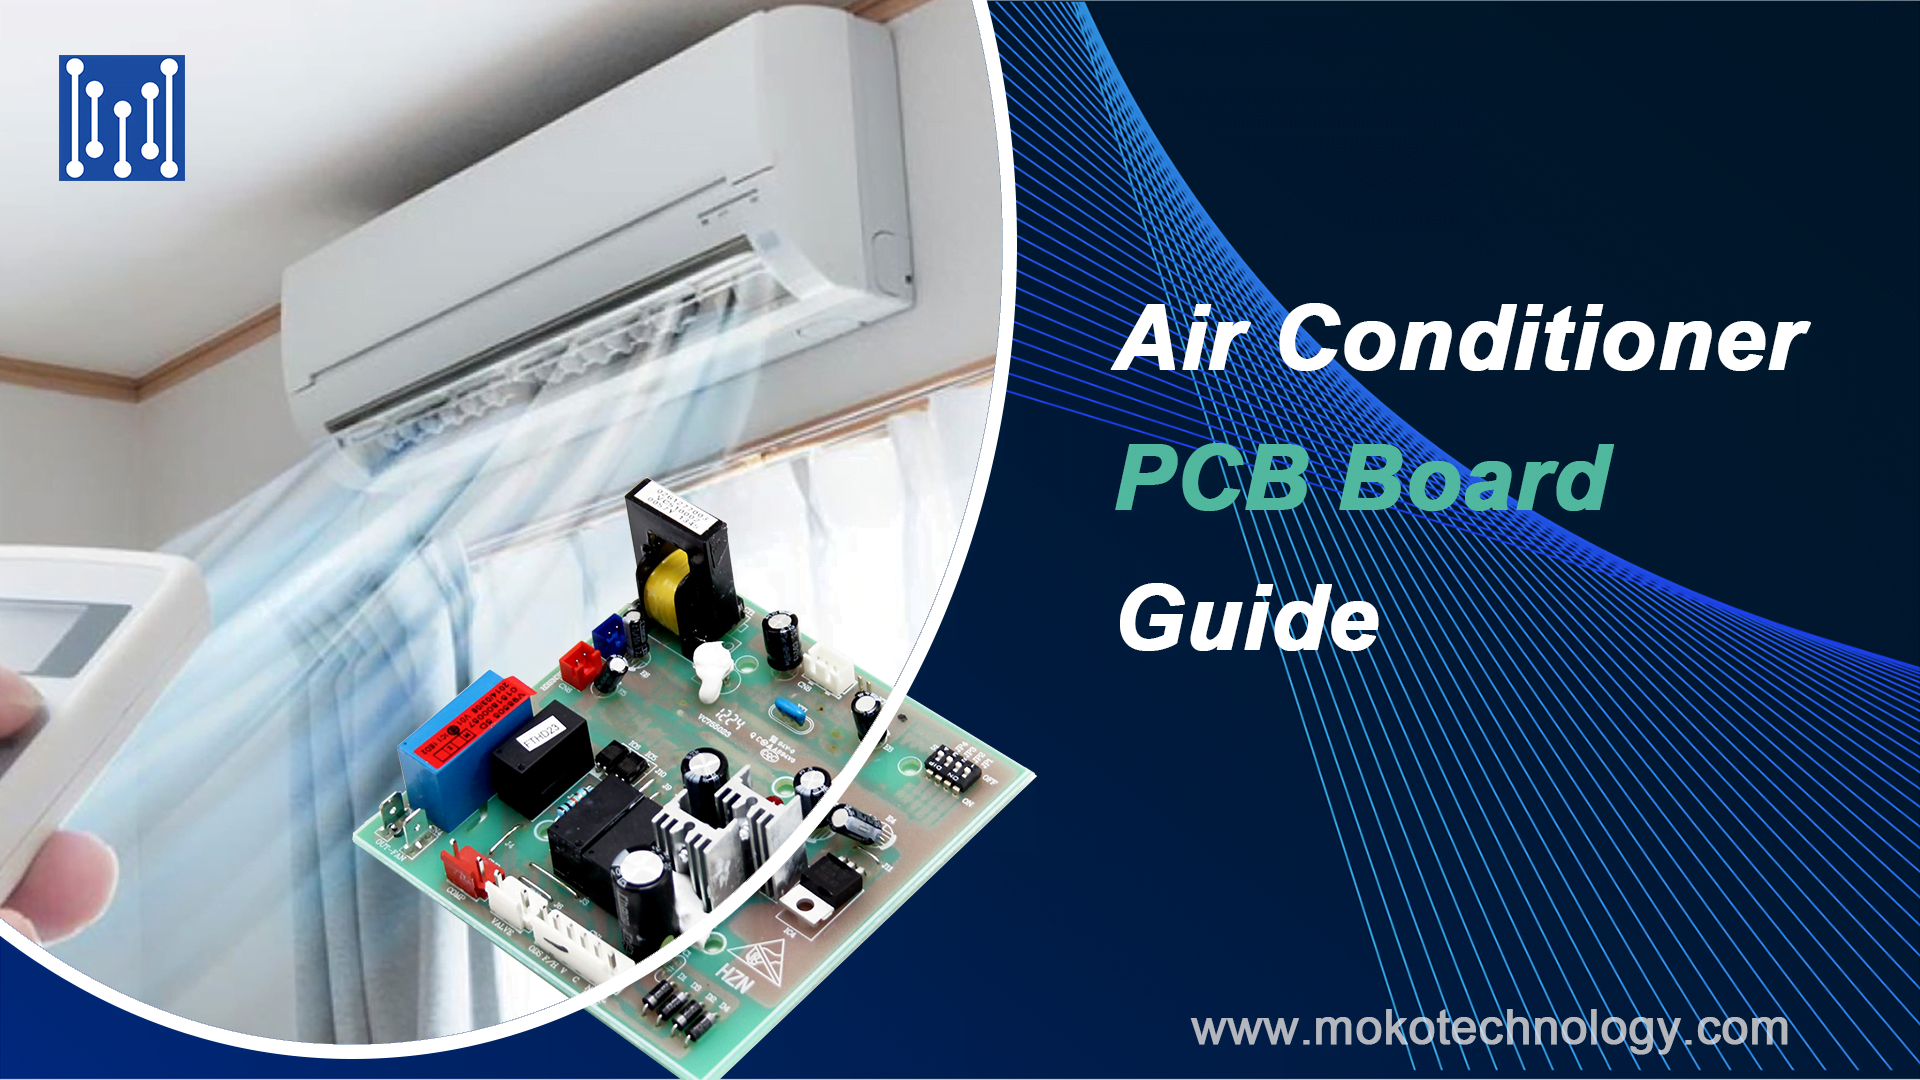 Air Conditioner PCB Board